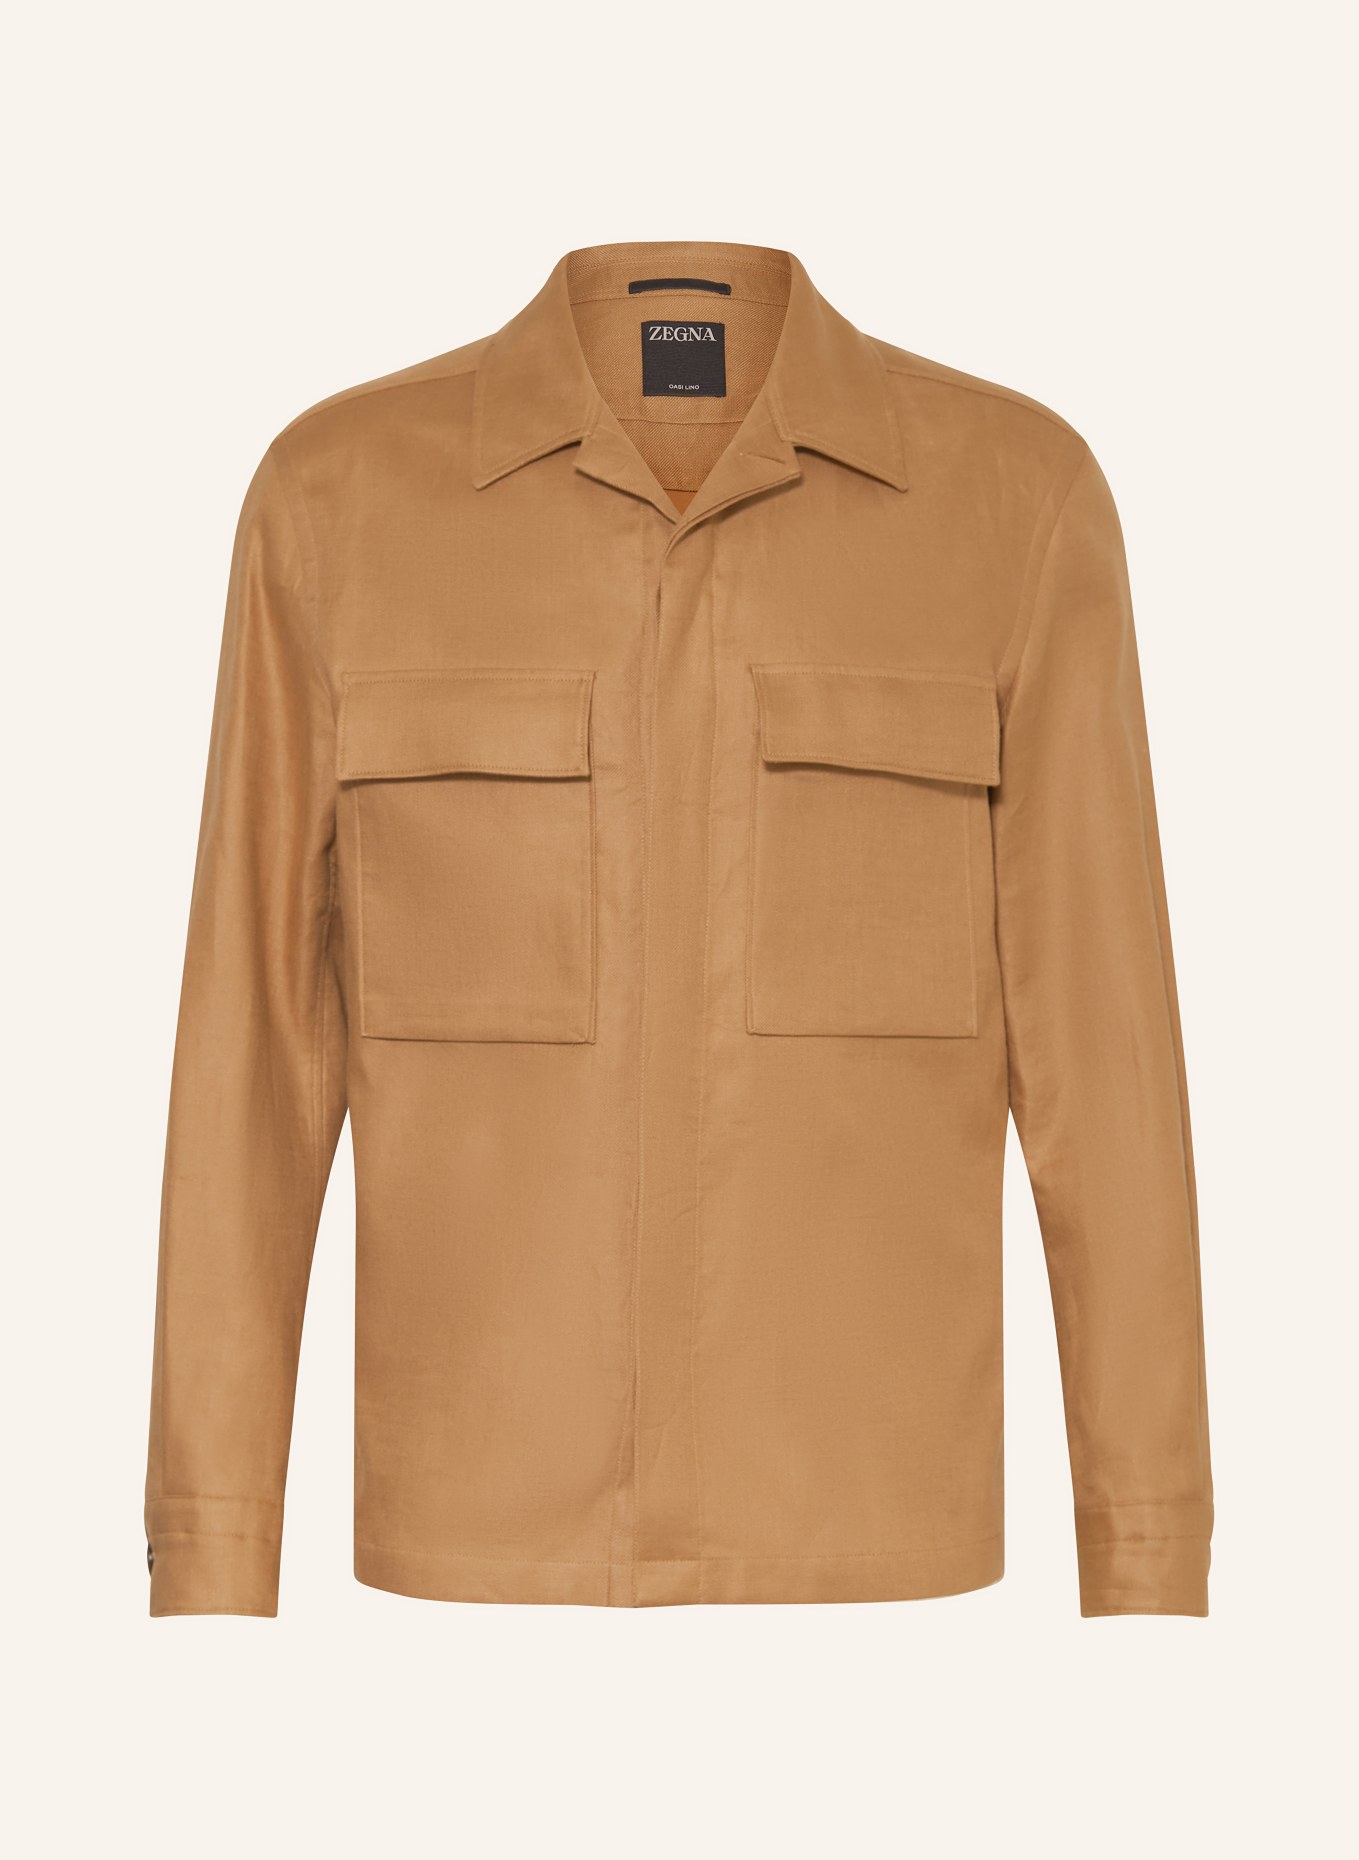 ZEGNA Linen overshirt, Color: CAMEL (Image 1)